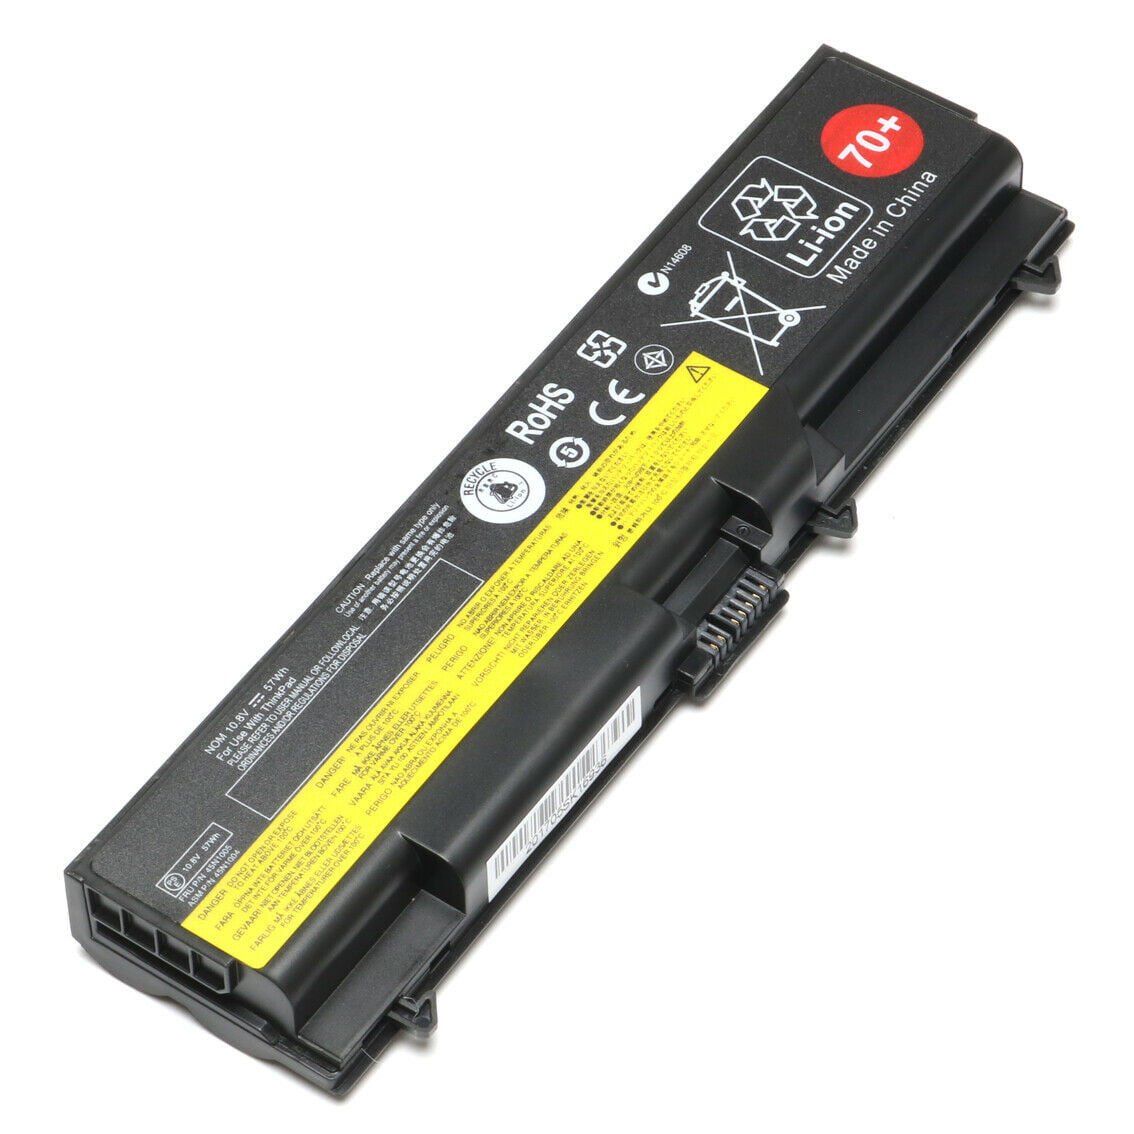 yanw 6Cell Battery for Lenovo ThinkPad T430 45N1004 W530 L530 45N1001 45N1007 57Y4186 